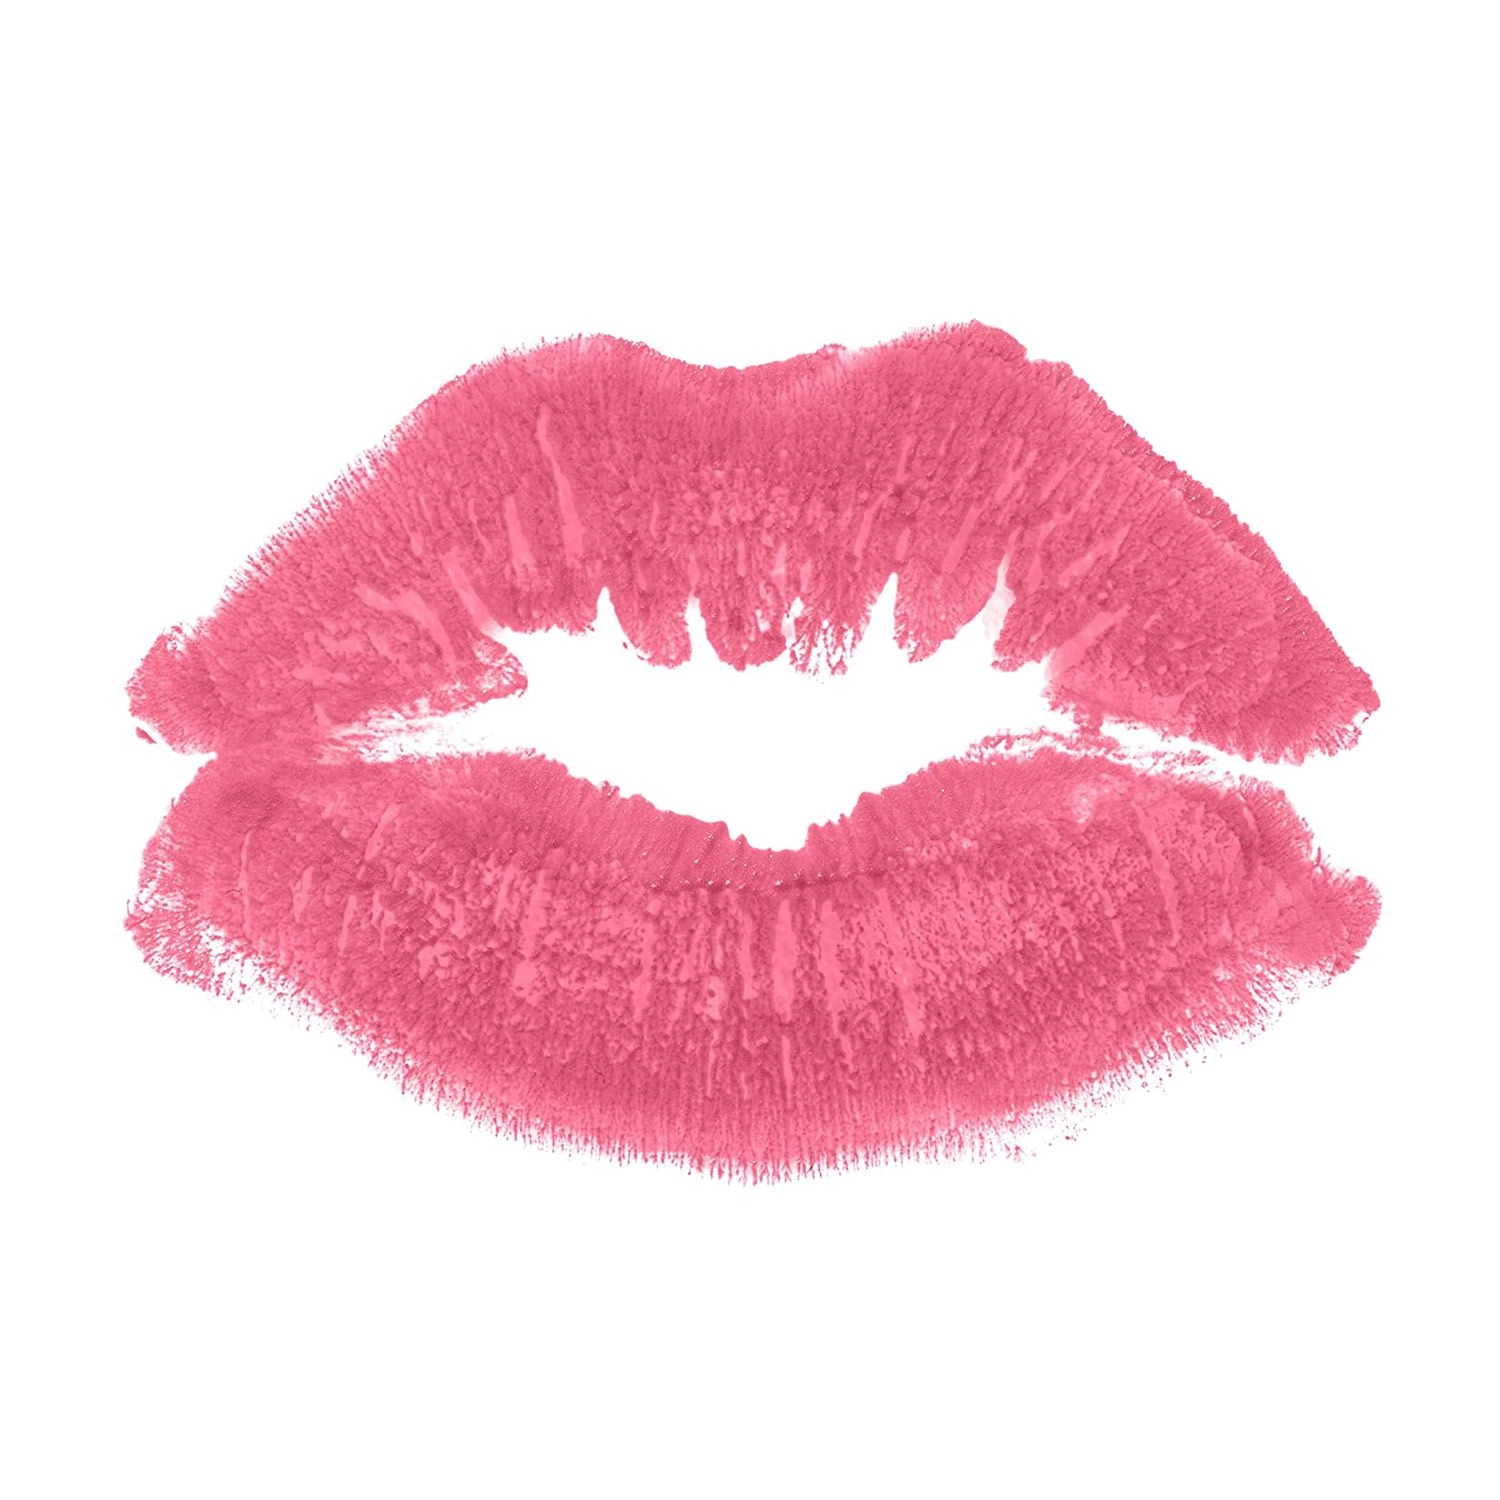 Revlon Матовая помада для губ Super Lustrous Matte Lipstick 048 Audacious Mauve, 4.2 г - фото N2